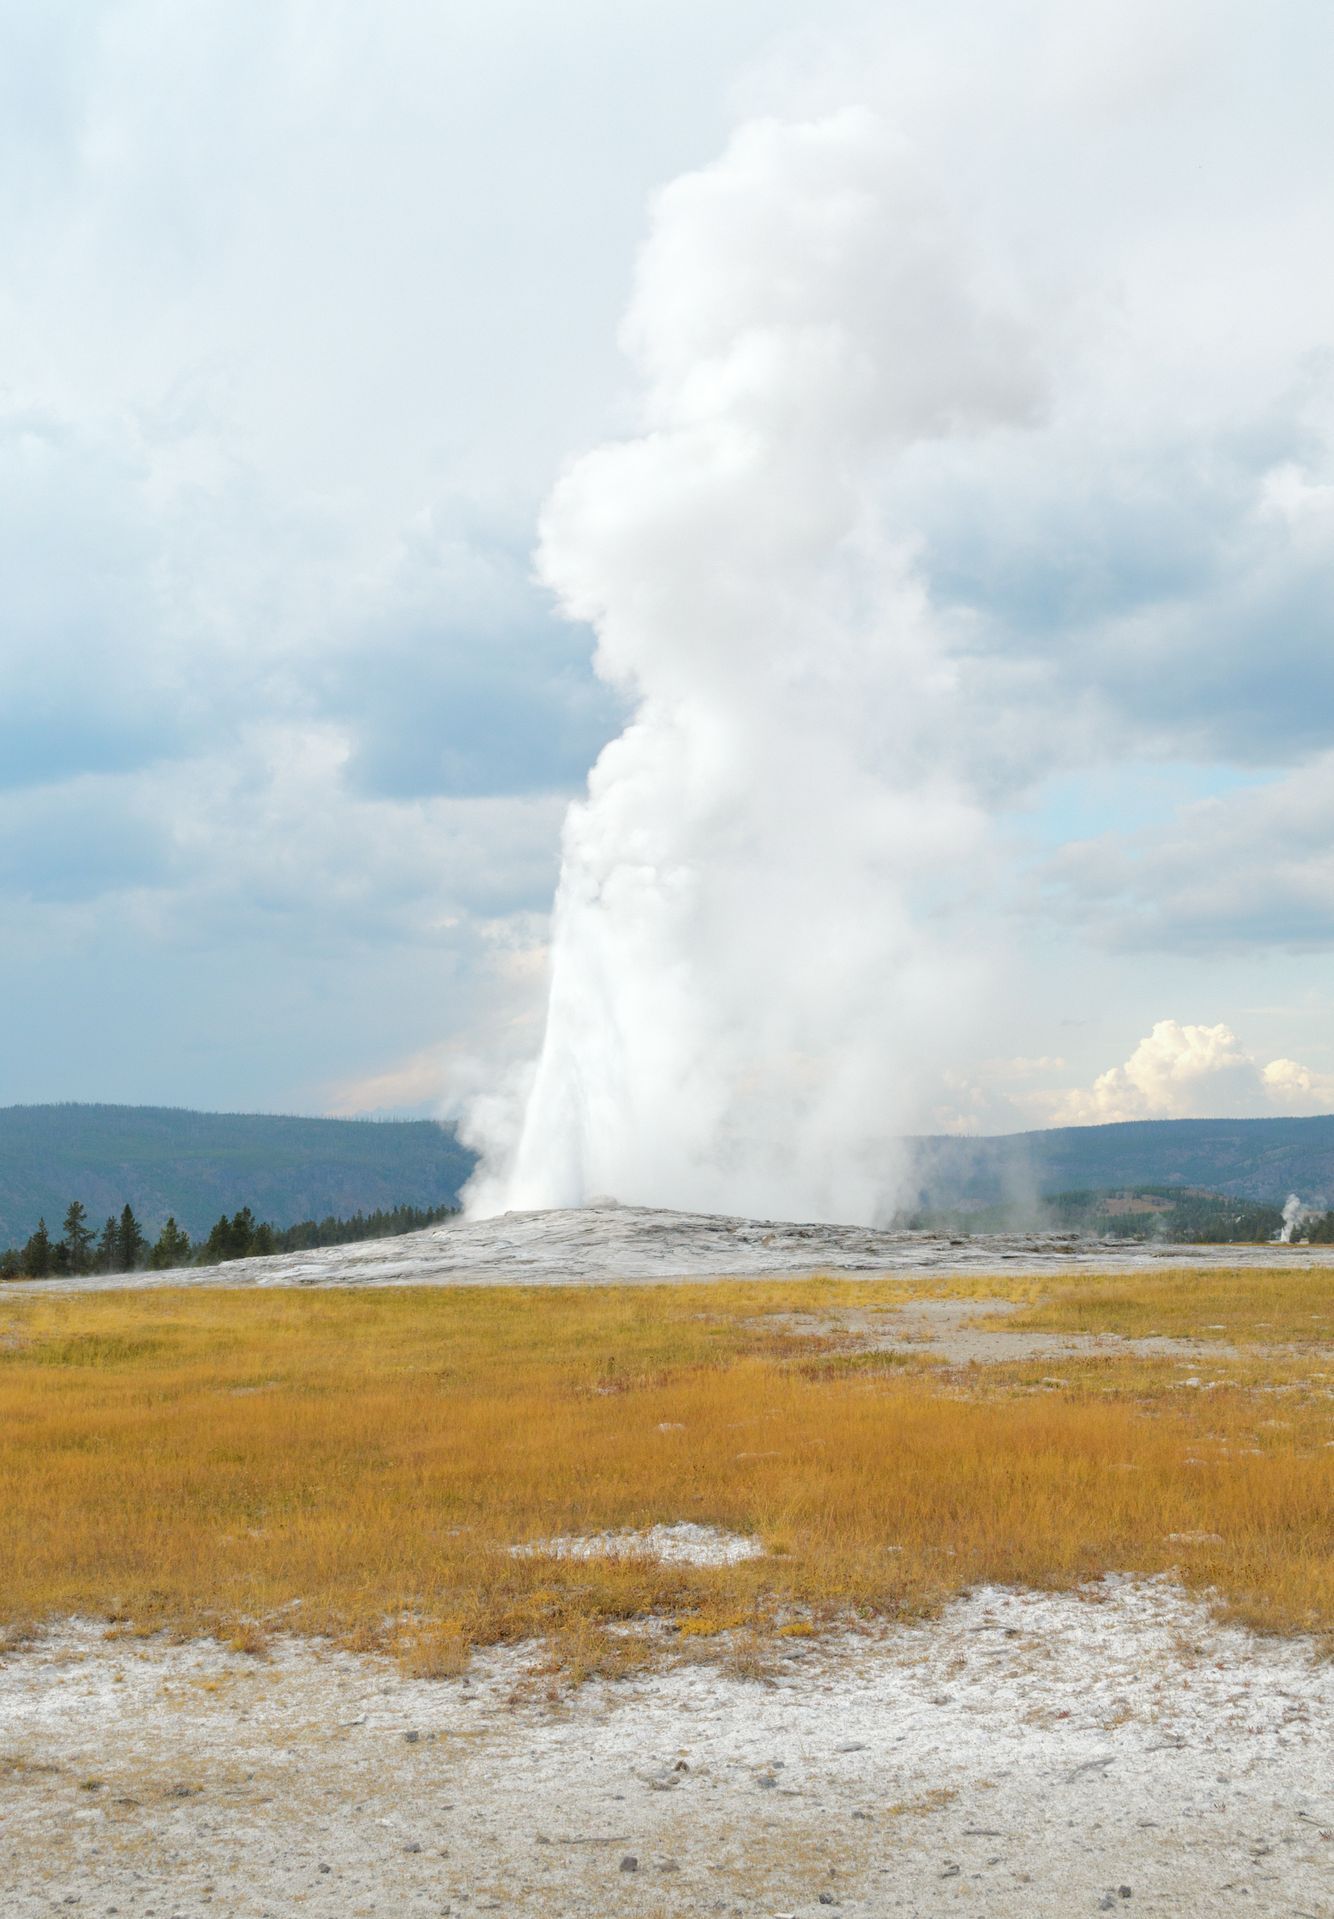 Národní park Yellowstone - gejzír Old faithful